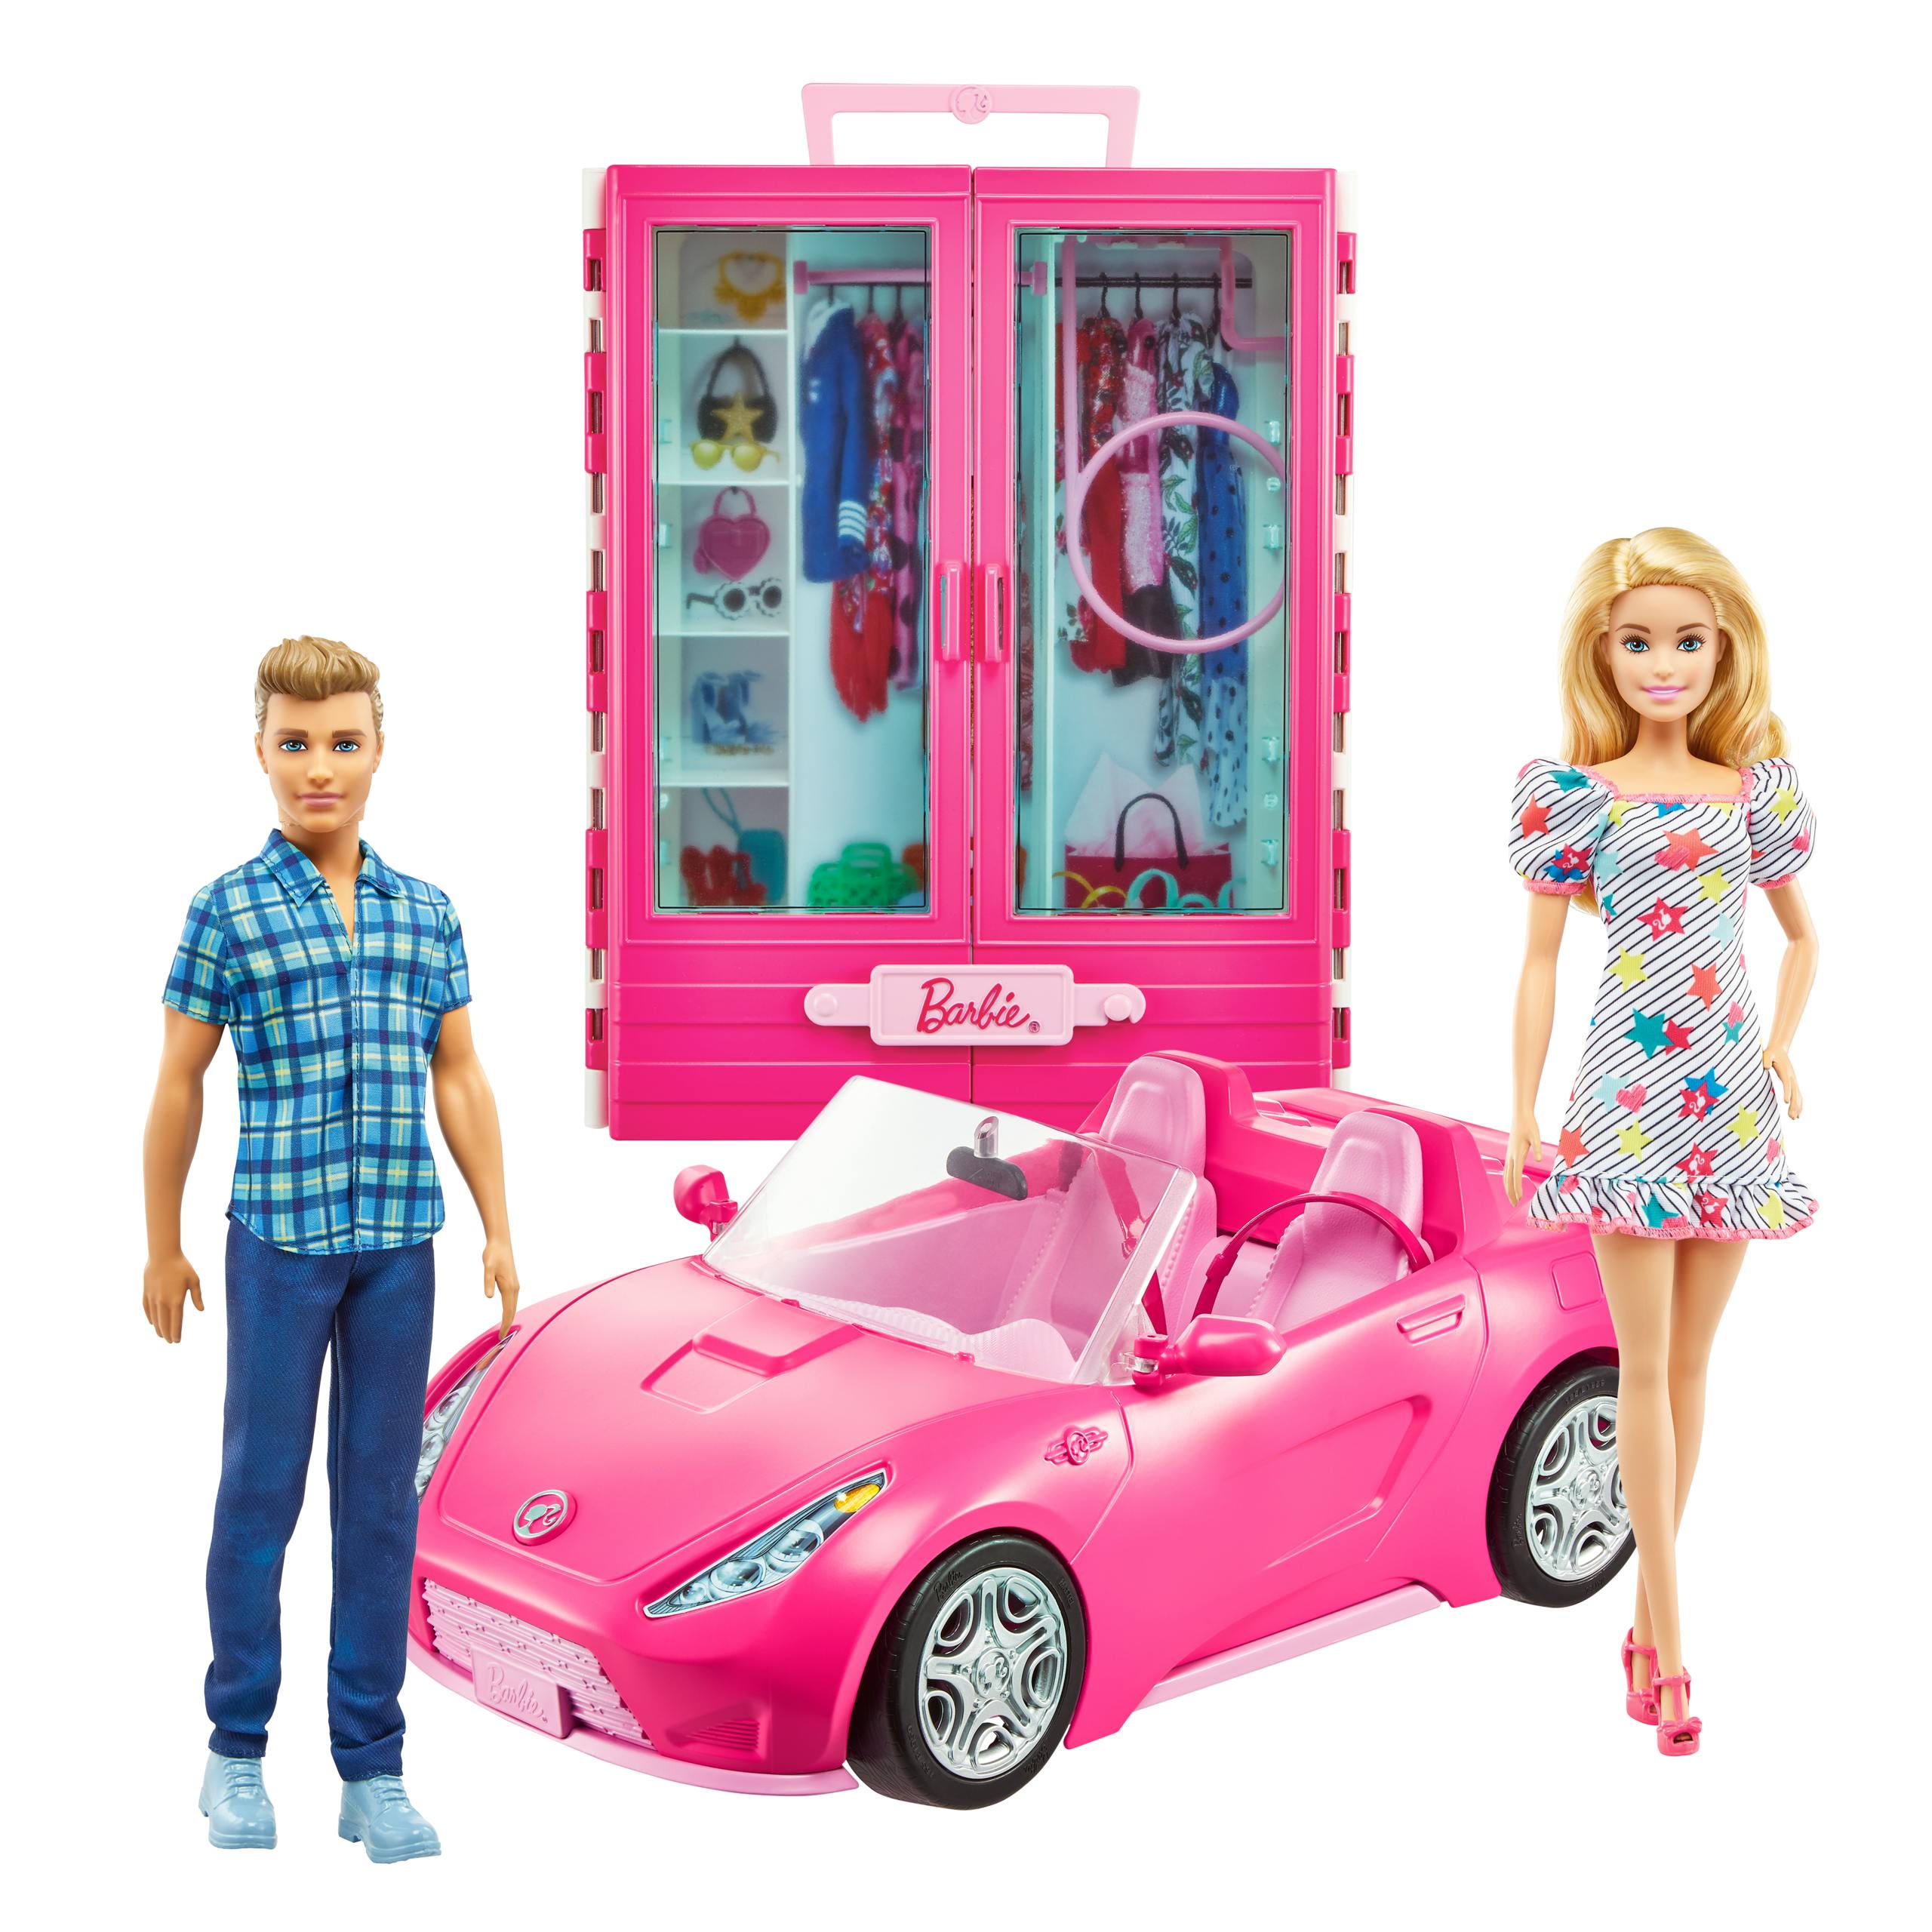 namens Verstenen agitatie Barbie + Ken pop met kleerkast en cabrio auto